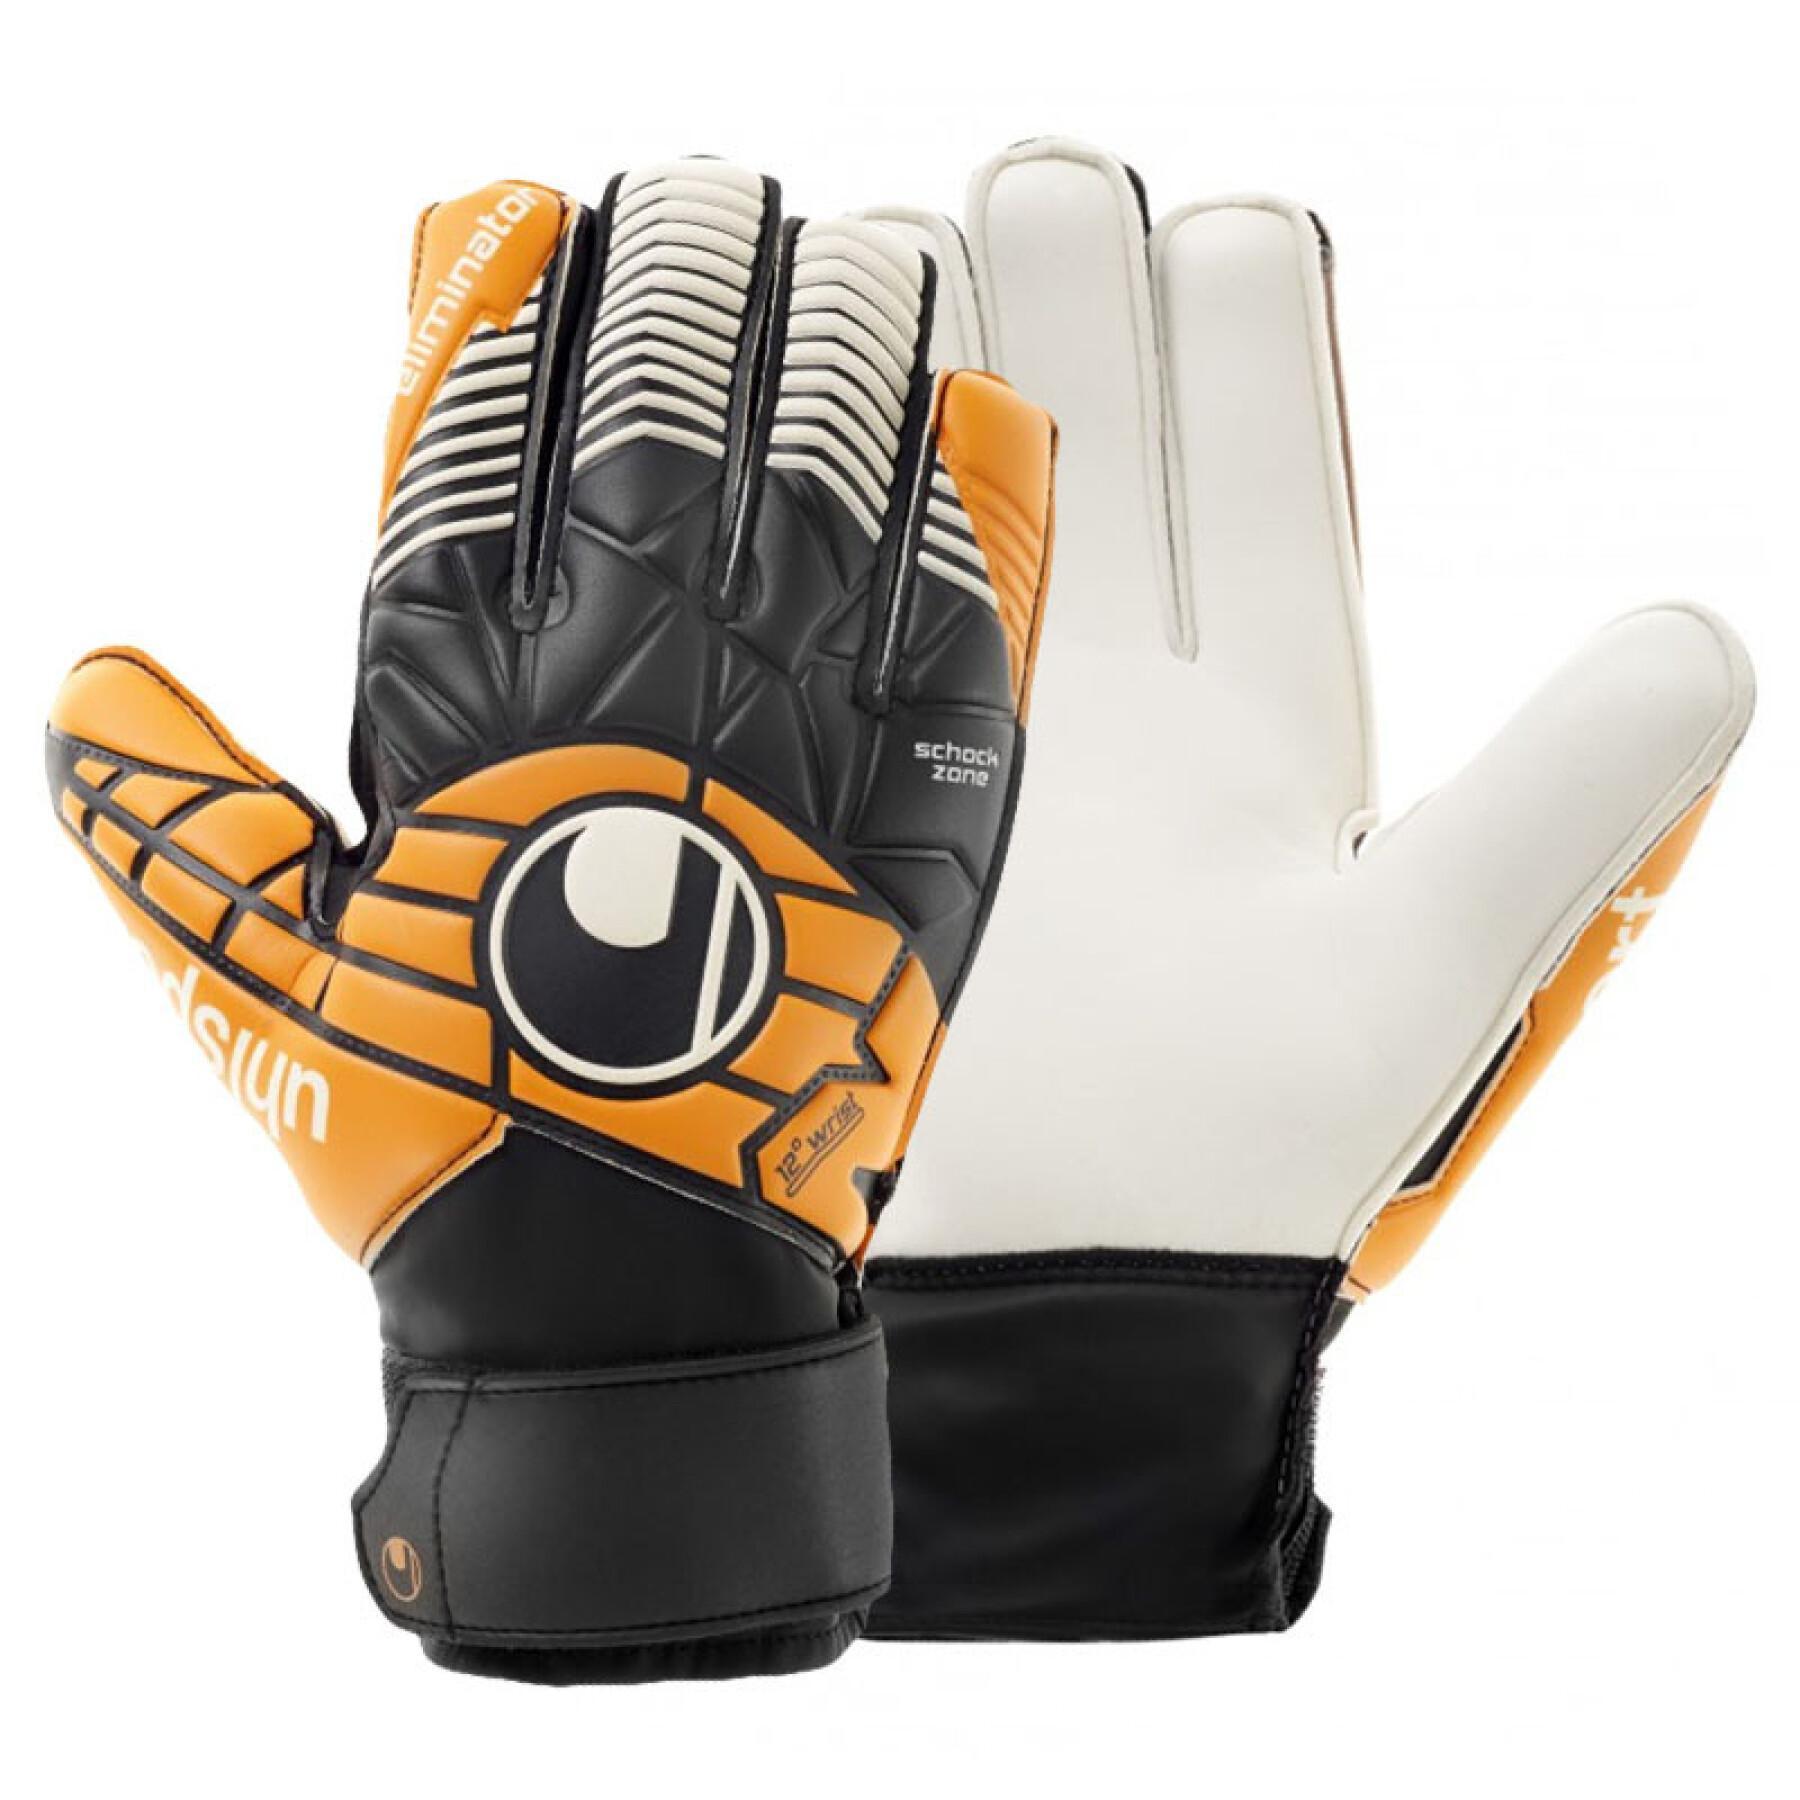 uhsport eliminator soft advanced goalkeeper gloves